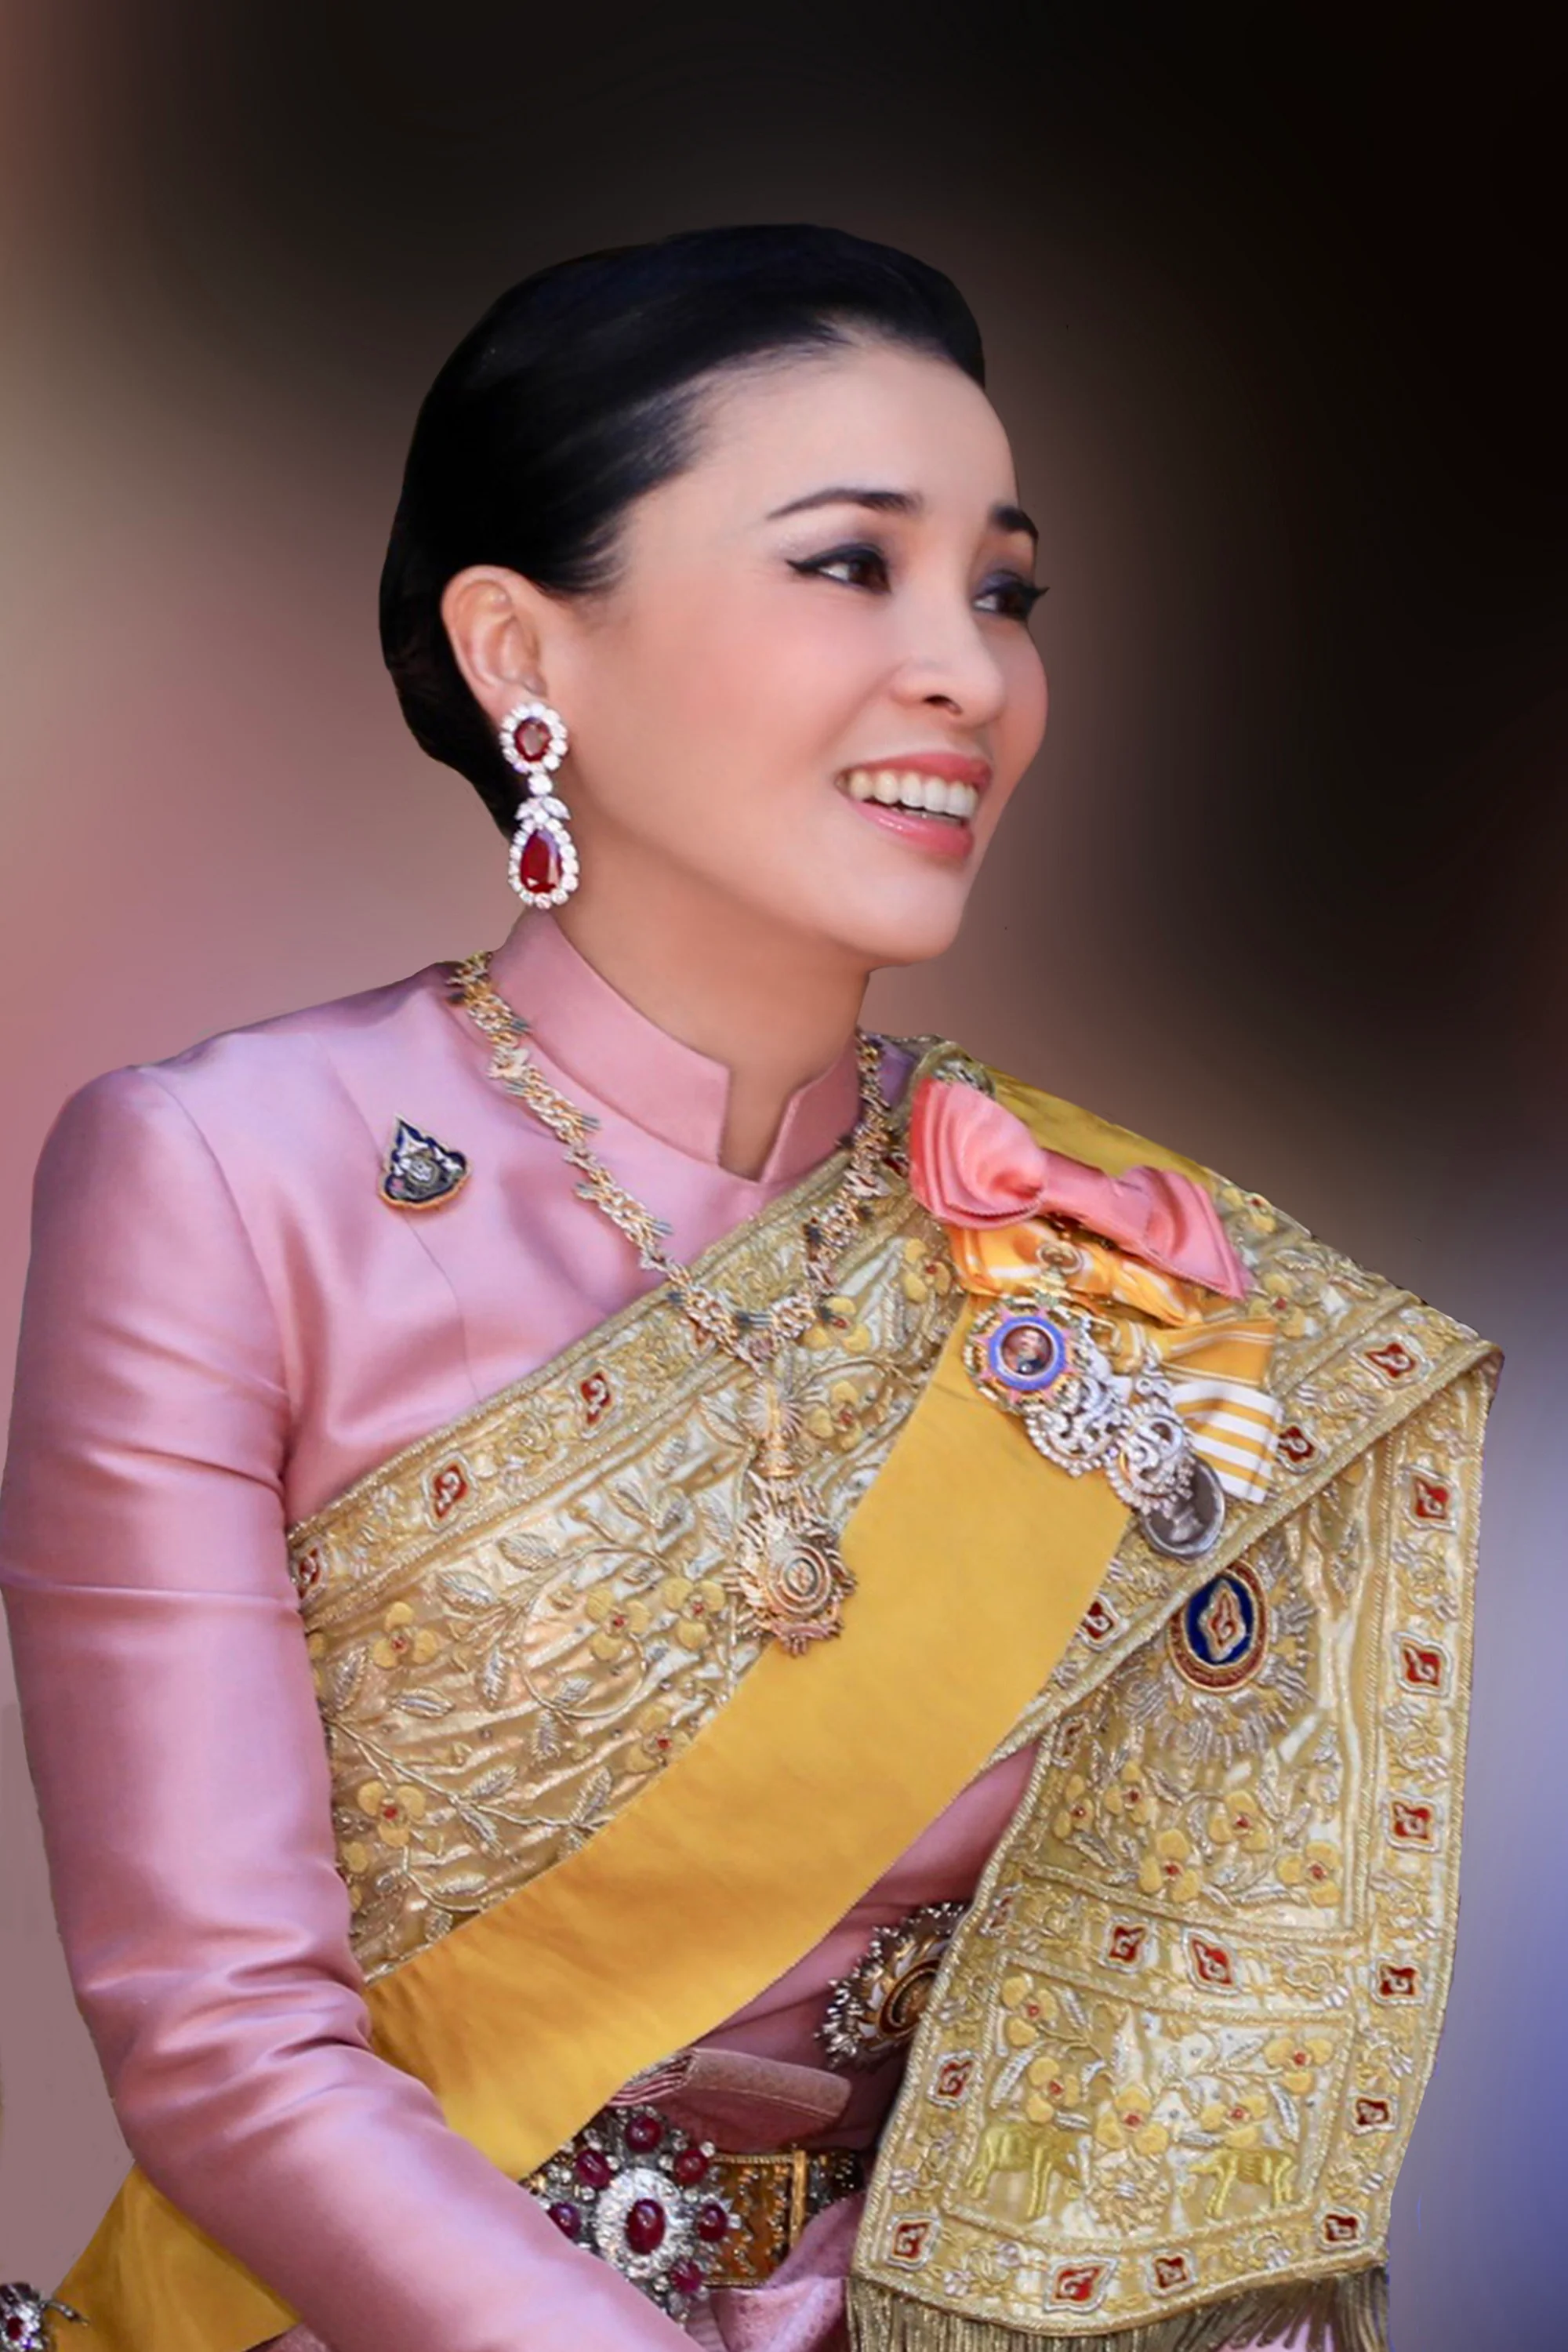 З’явилися перші офіційні фото королеви Таїланду, і вони зовсім не схожі на портрет Меган - фото 434520